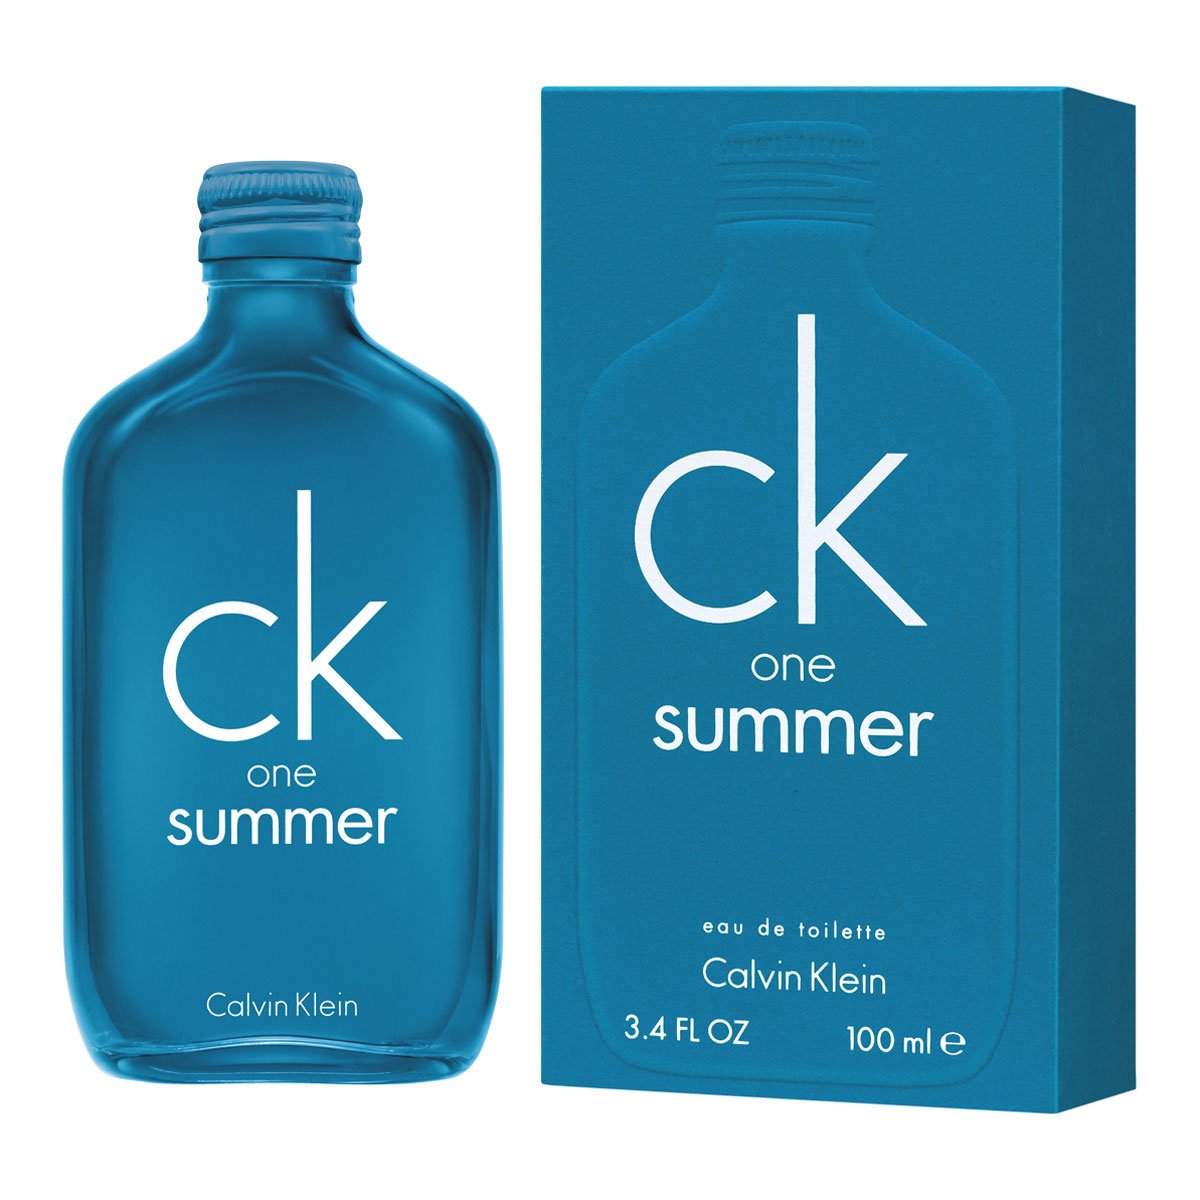 Ck One Summer 18 Edt 100 Ml Calvin Klein